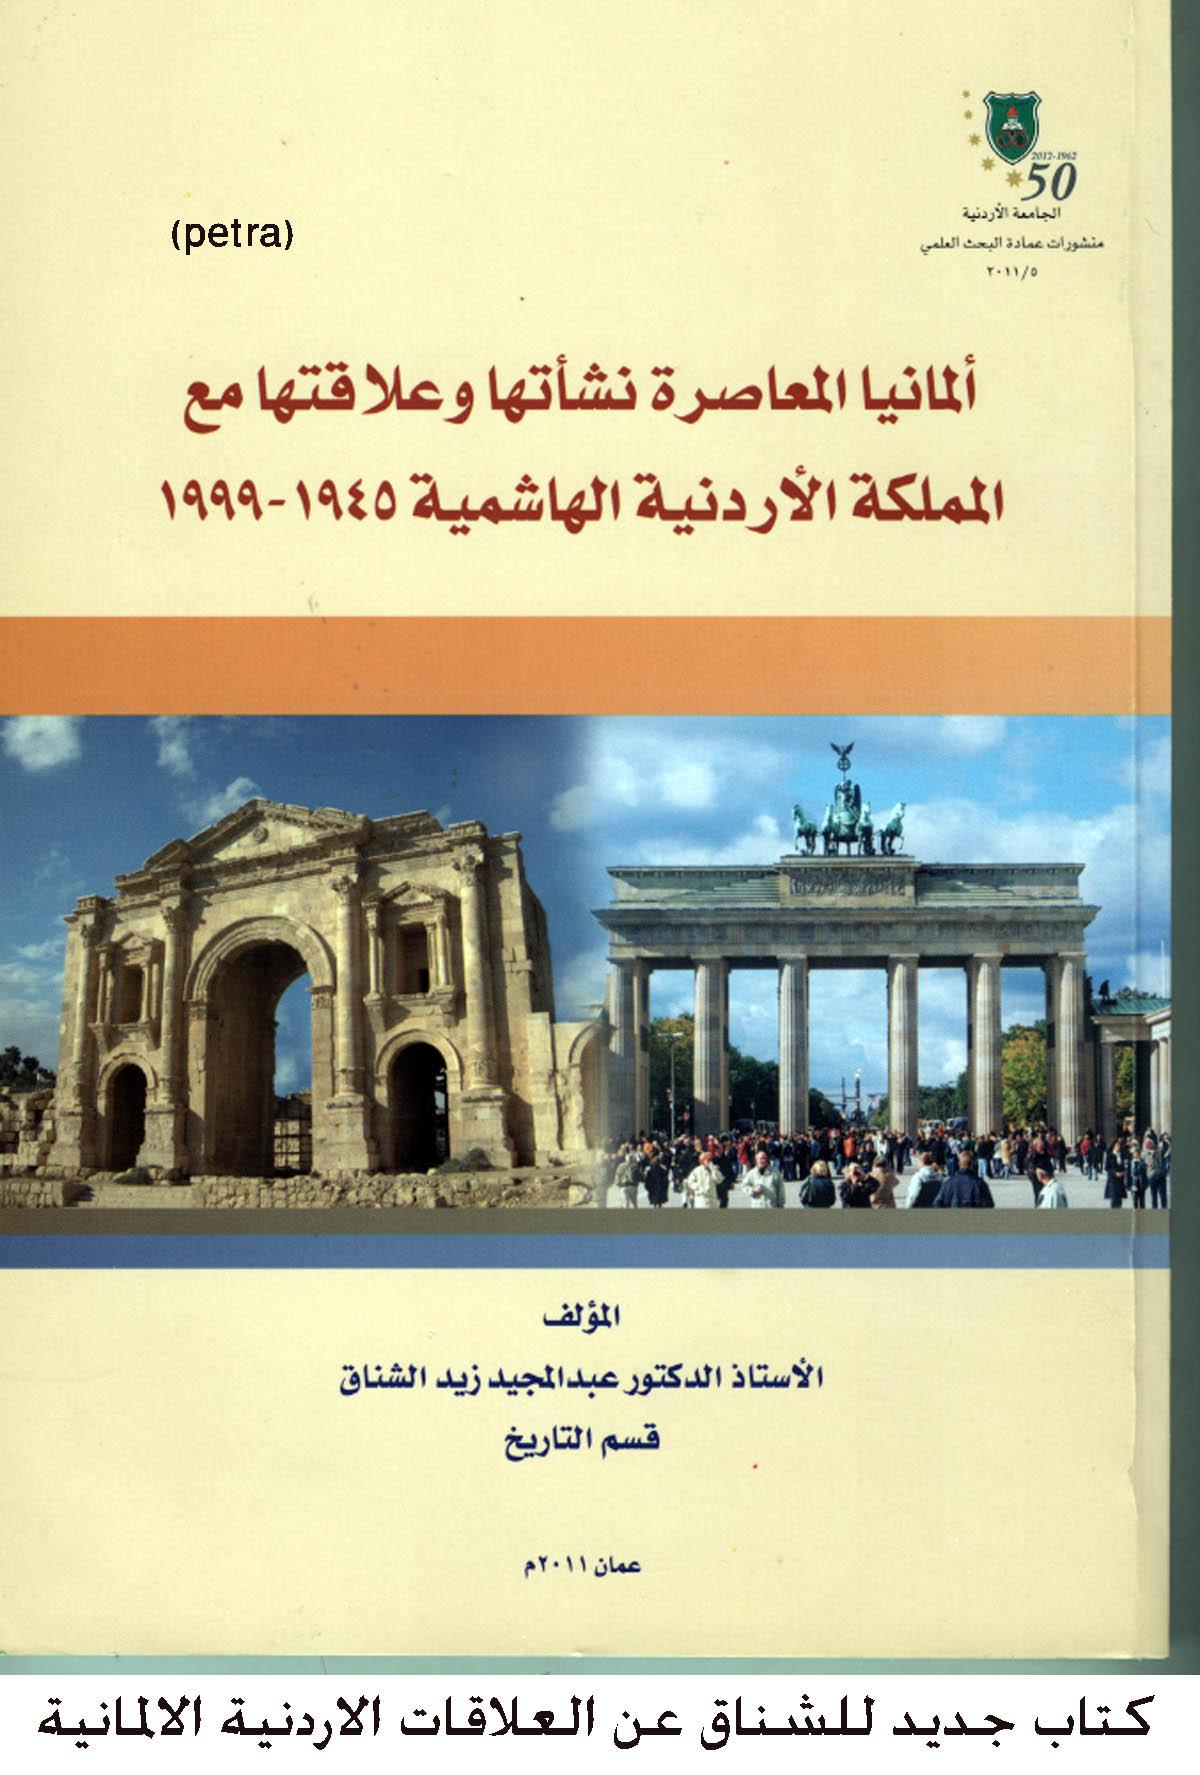 أخبار الأردنية الجامعة الاردنية عمان الأردن كتاب جديد للشناق عن العلاقات الاردنية الالمانية